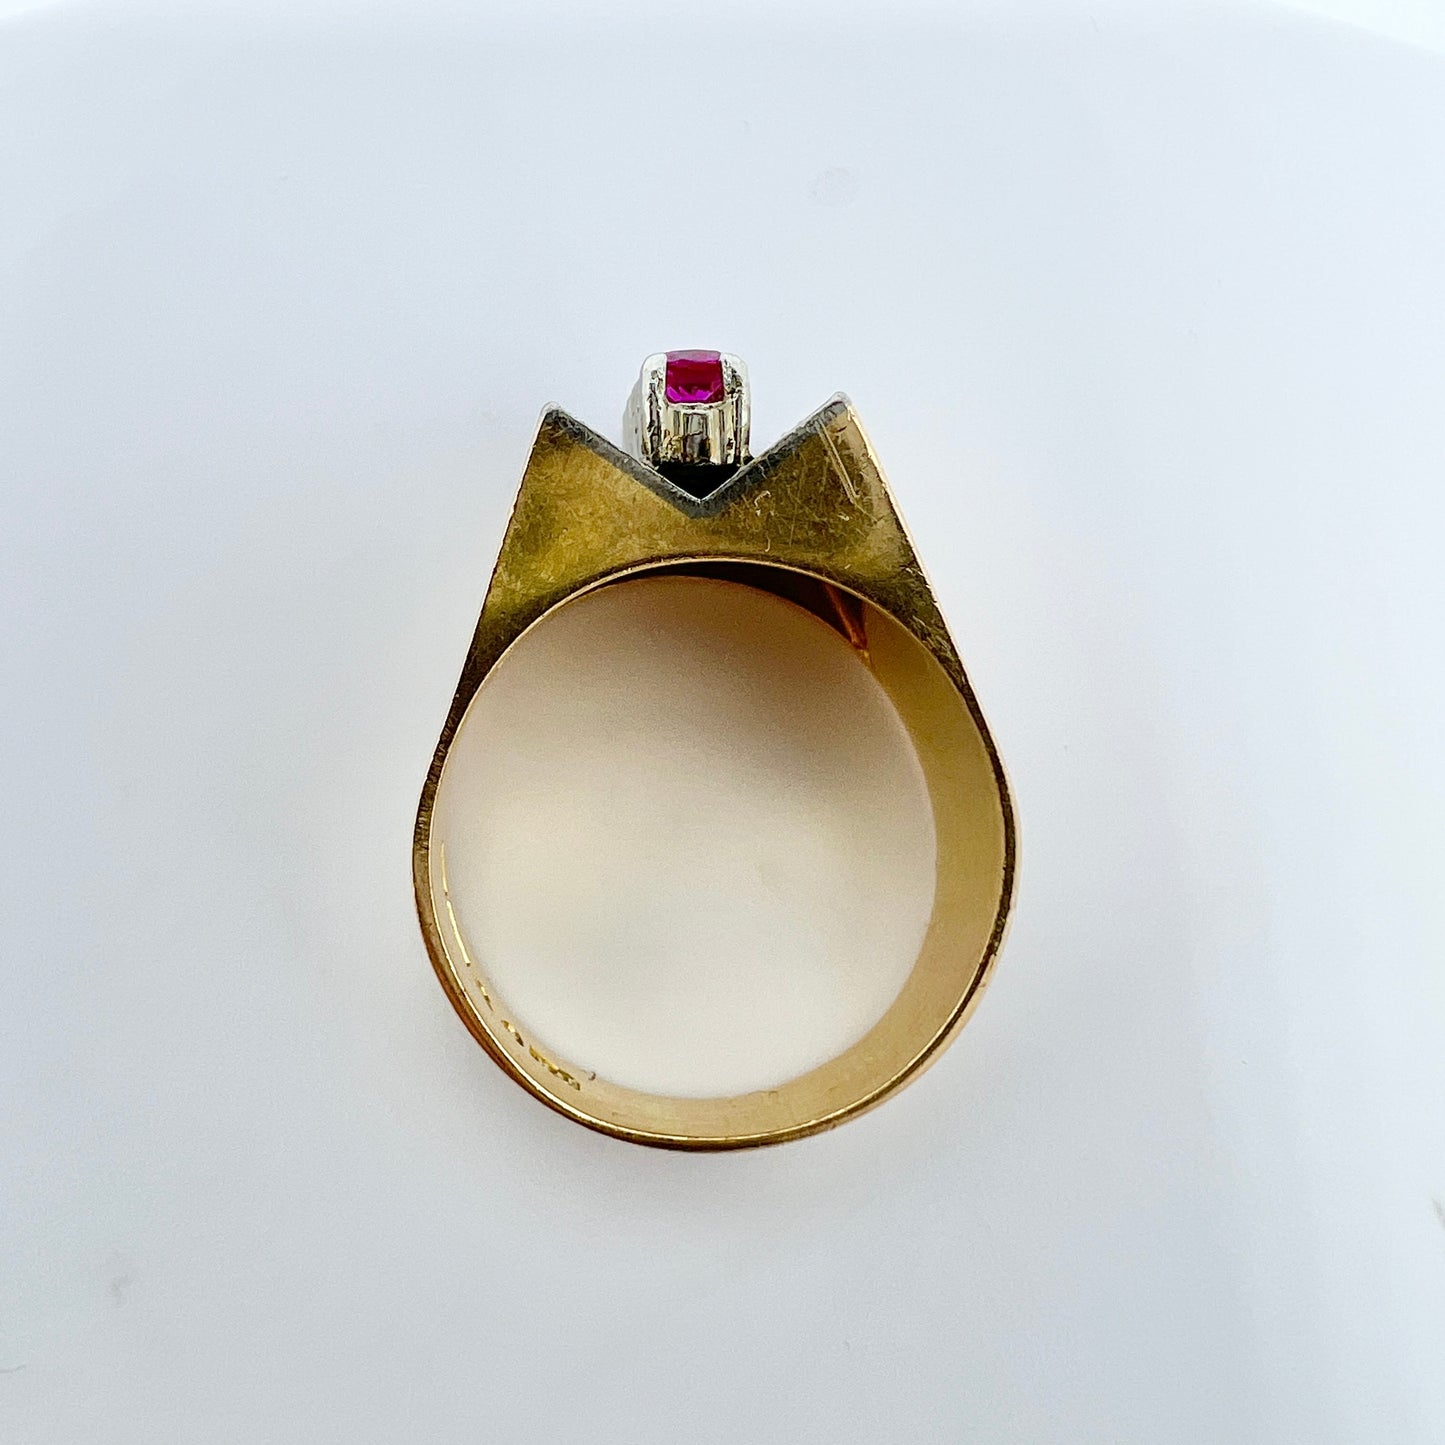 Kaplan Stockholm, Sweden 1971. Vintage Modernist 18k Gold Sapphire Ring. 9.7gram